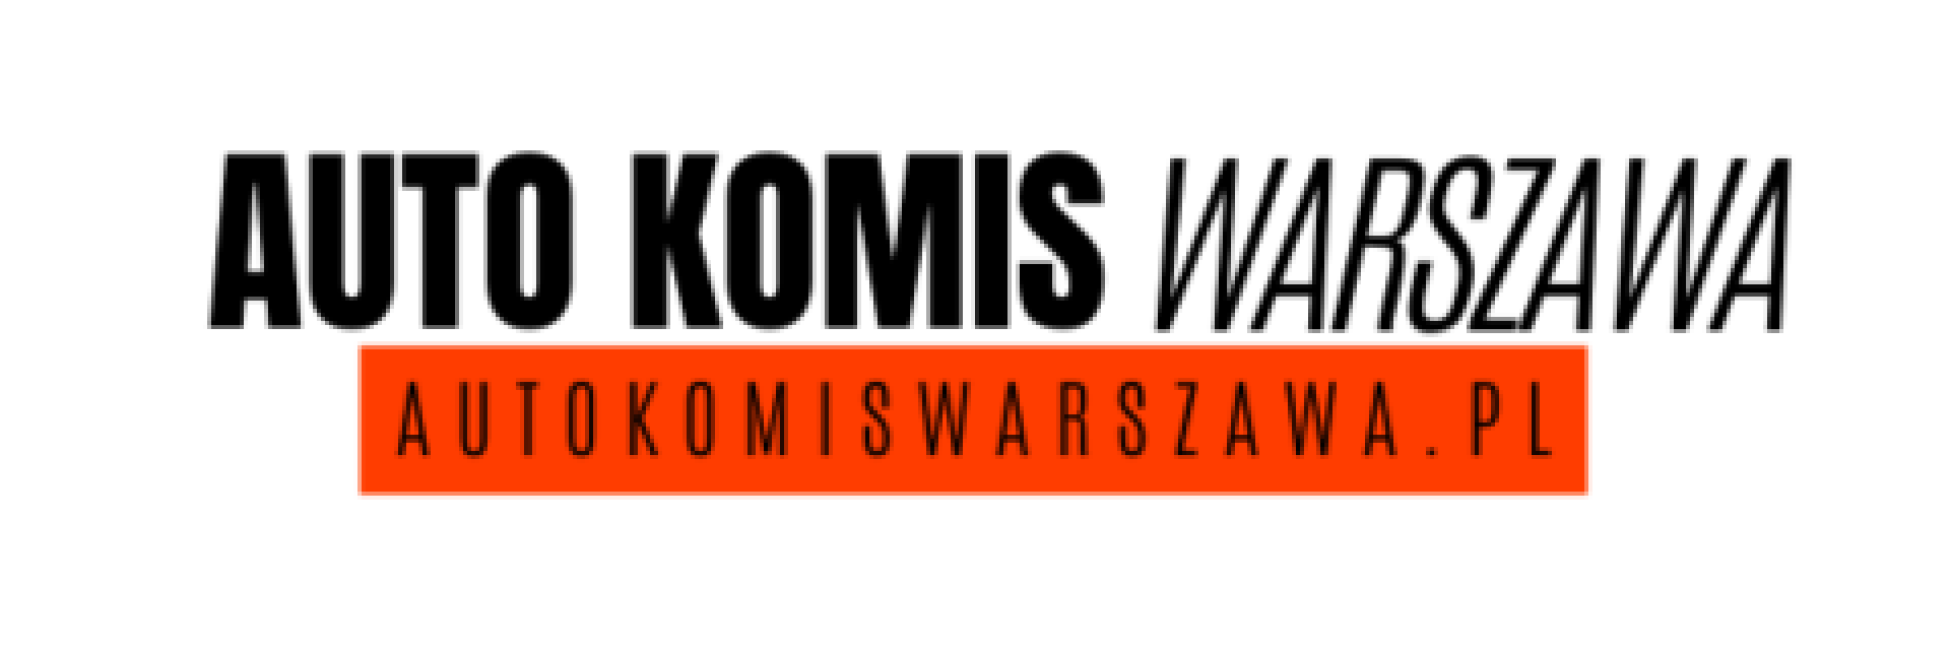 Auto komis Warszawa